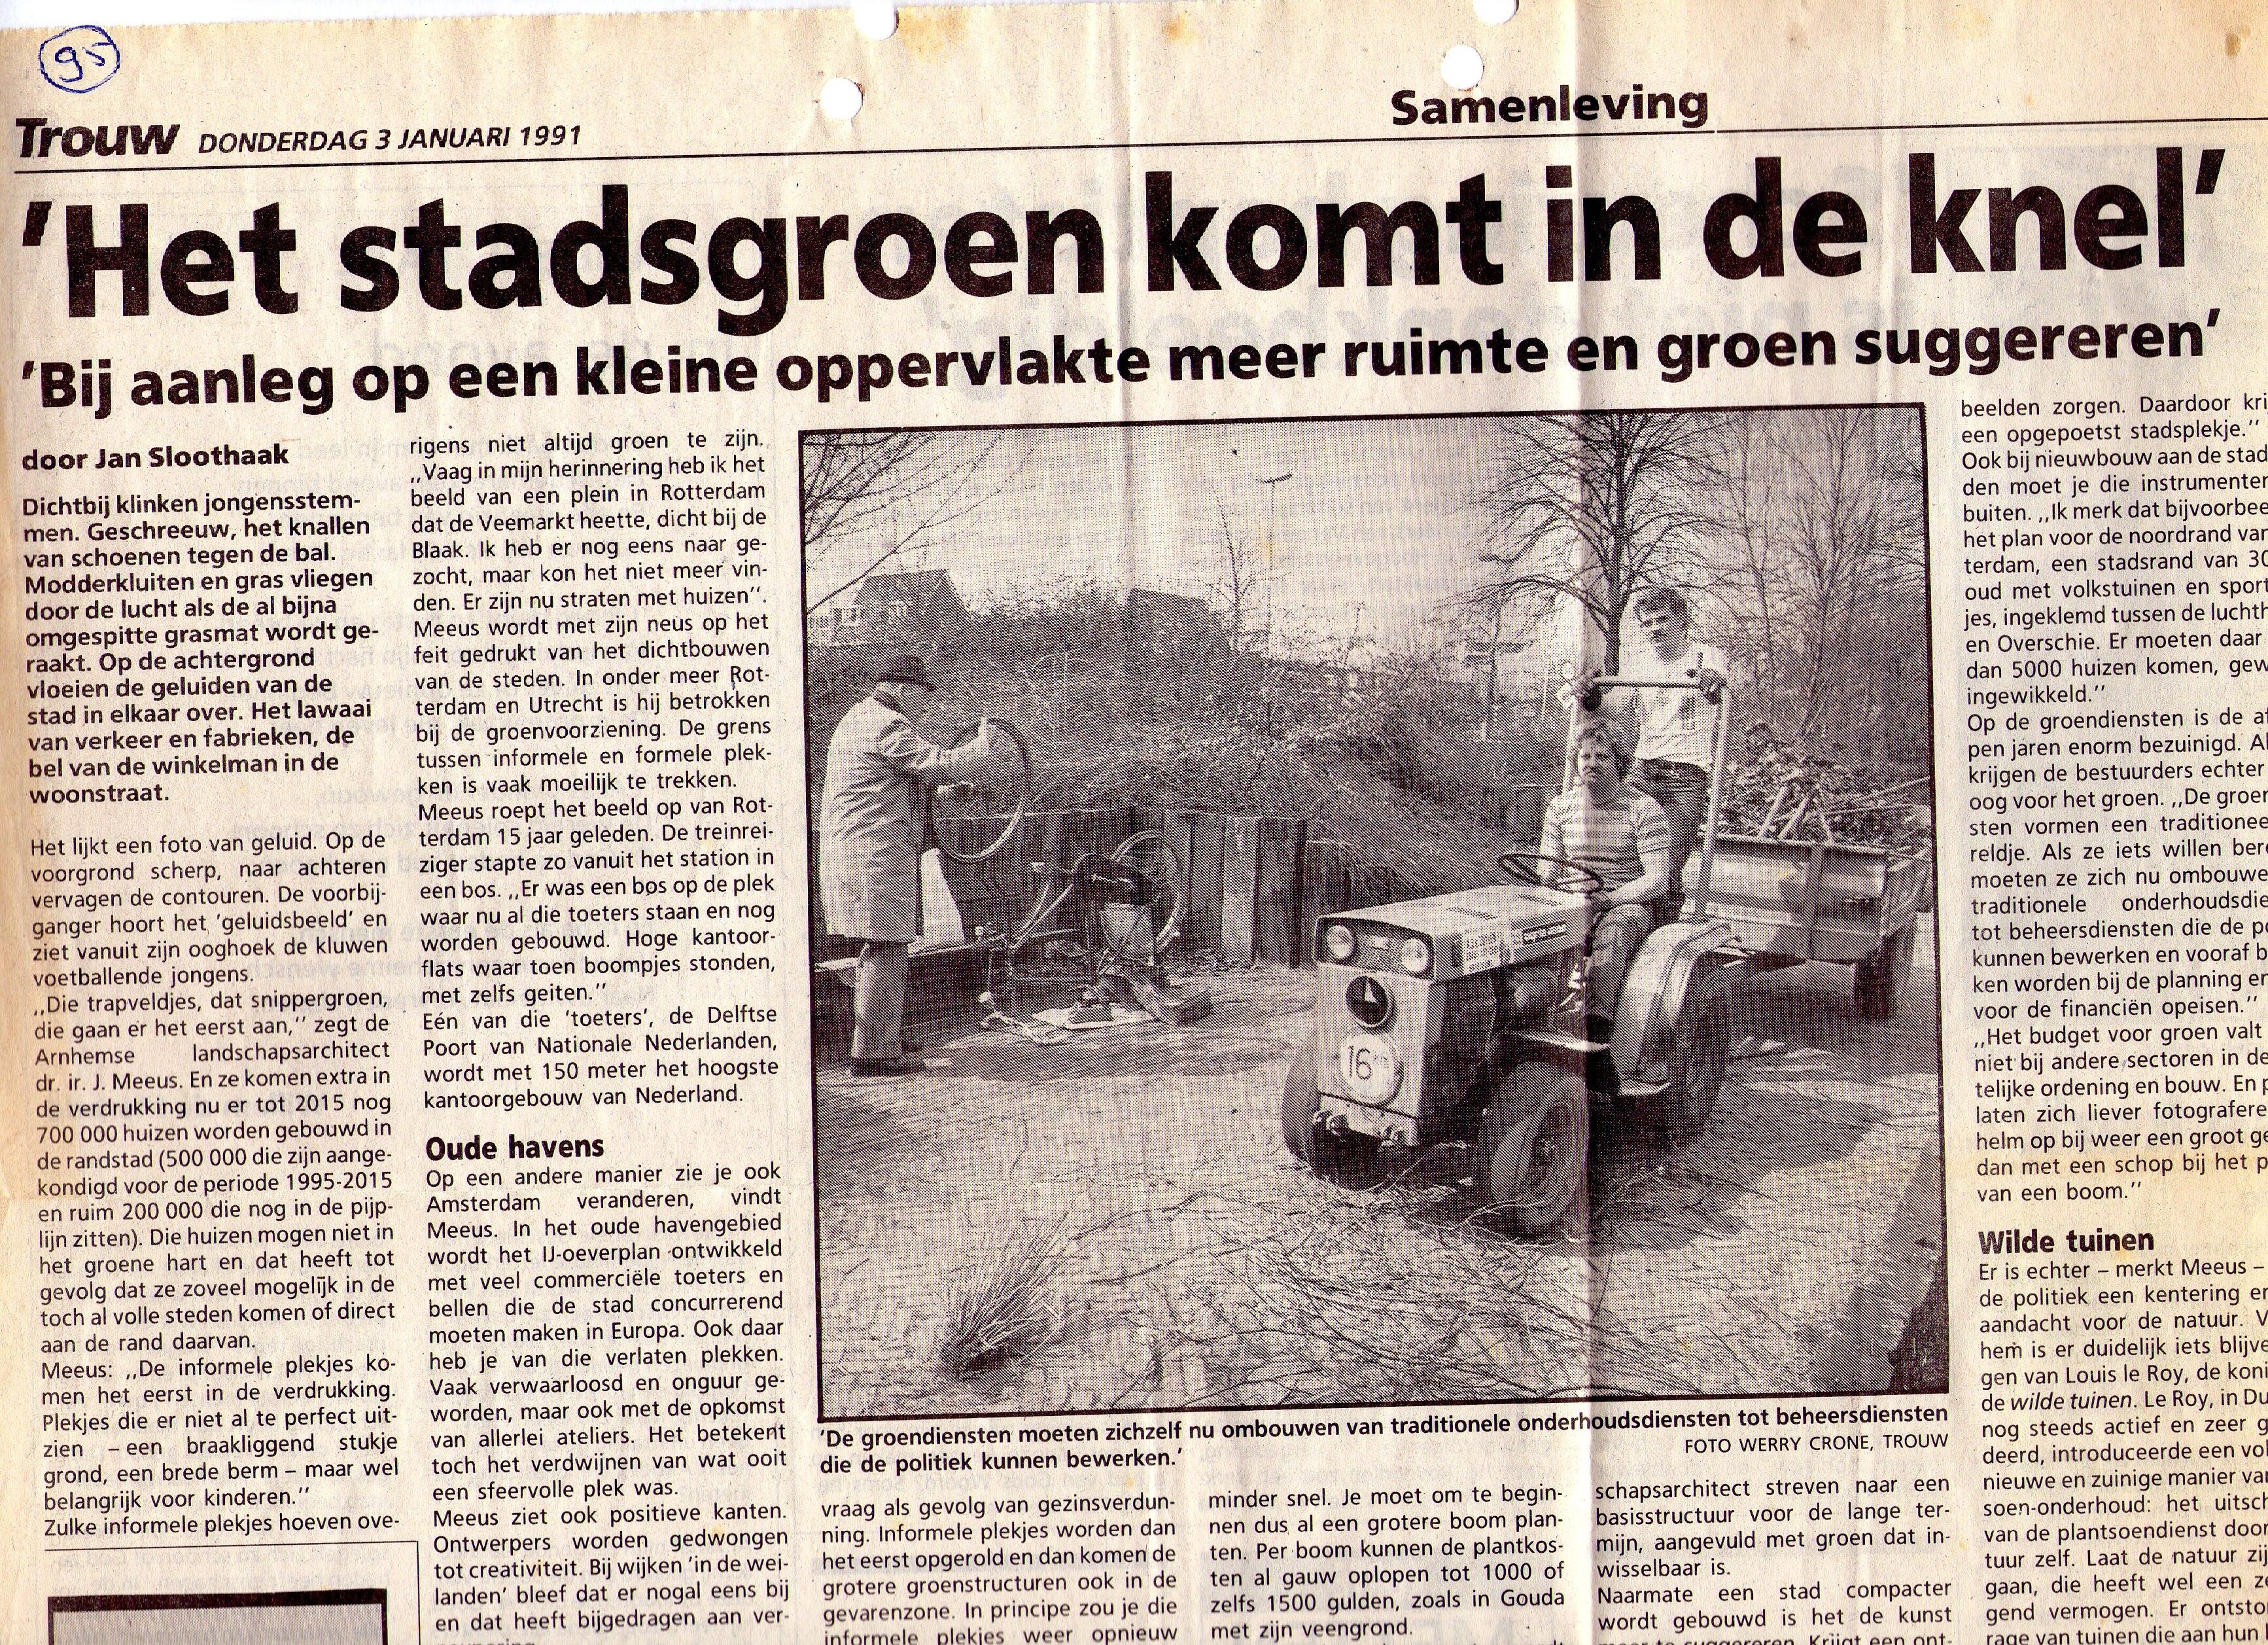 19910103_Het_stadsgroen_komt_in_de_knel_001.jpg